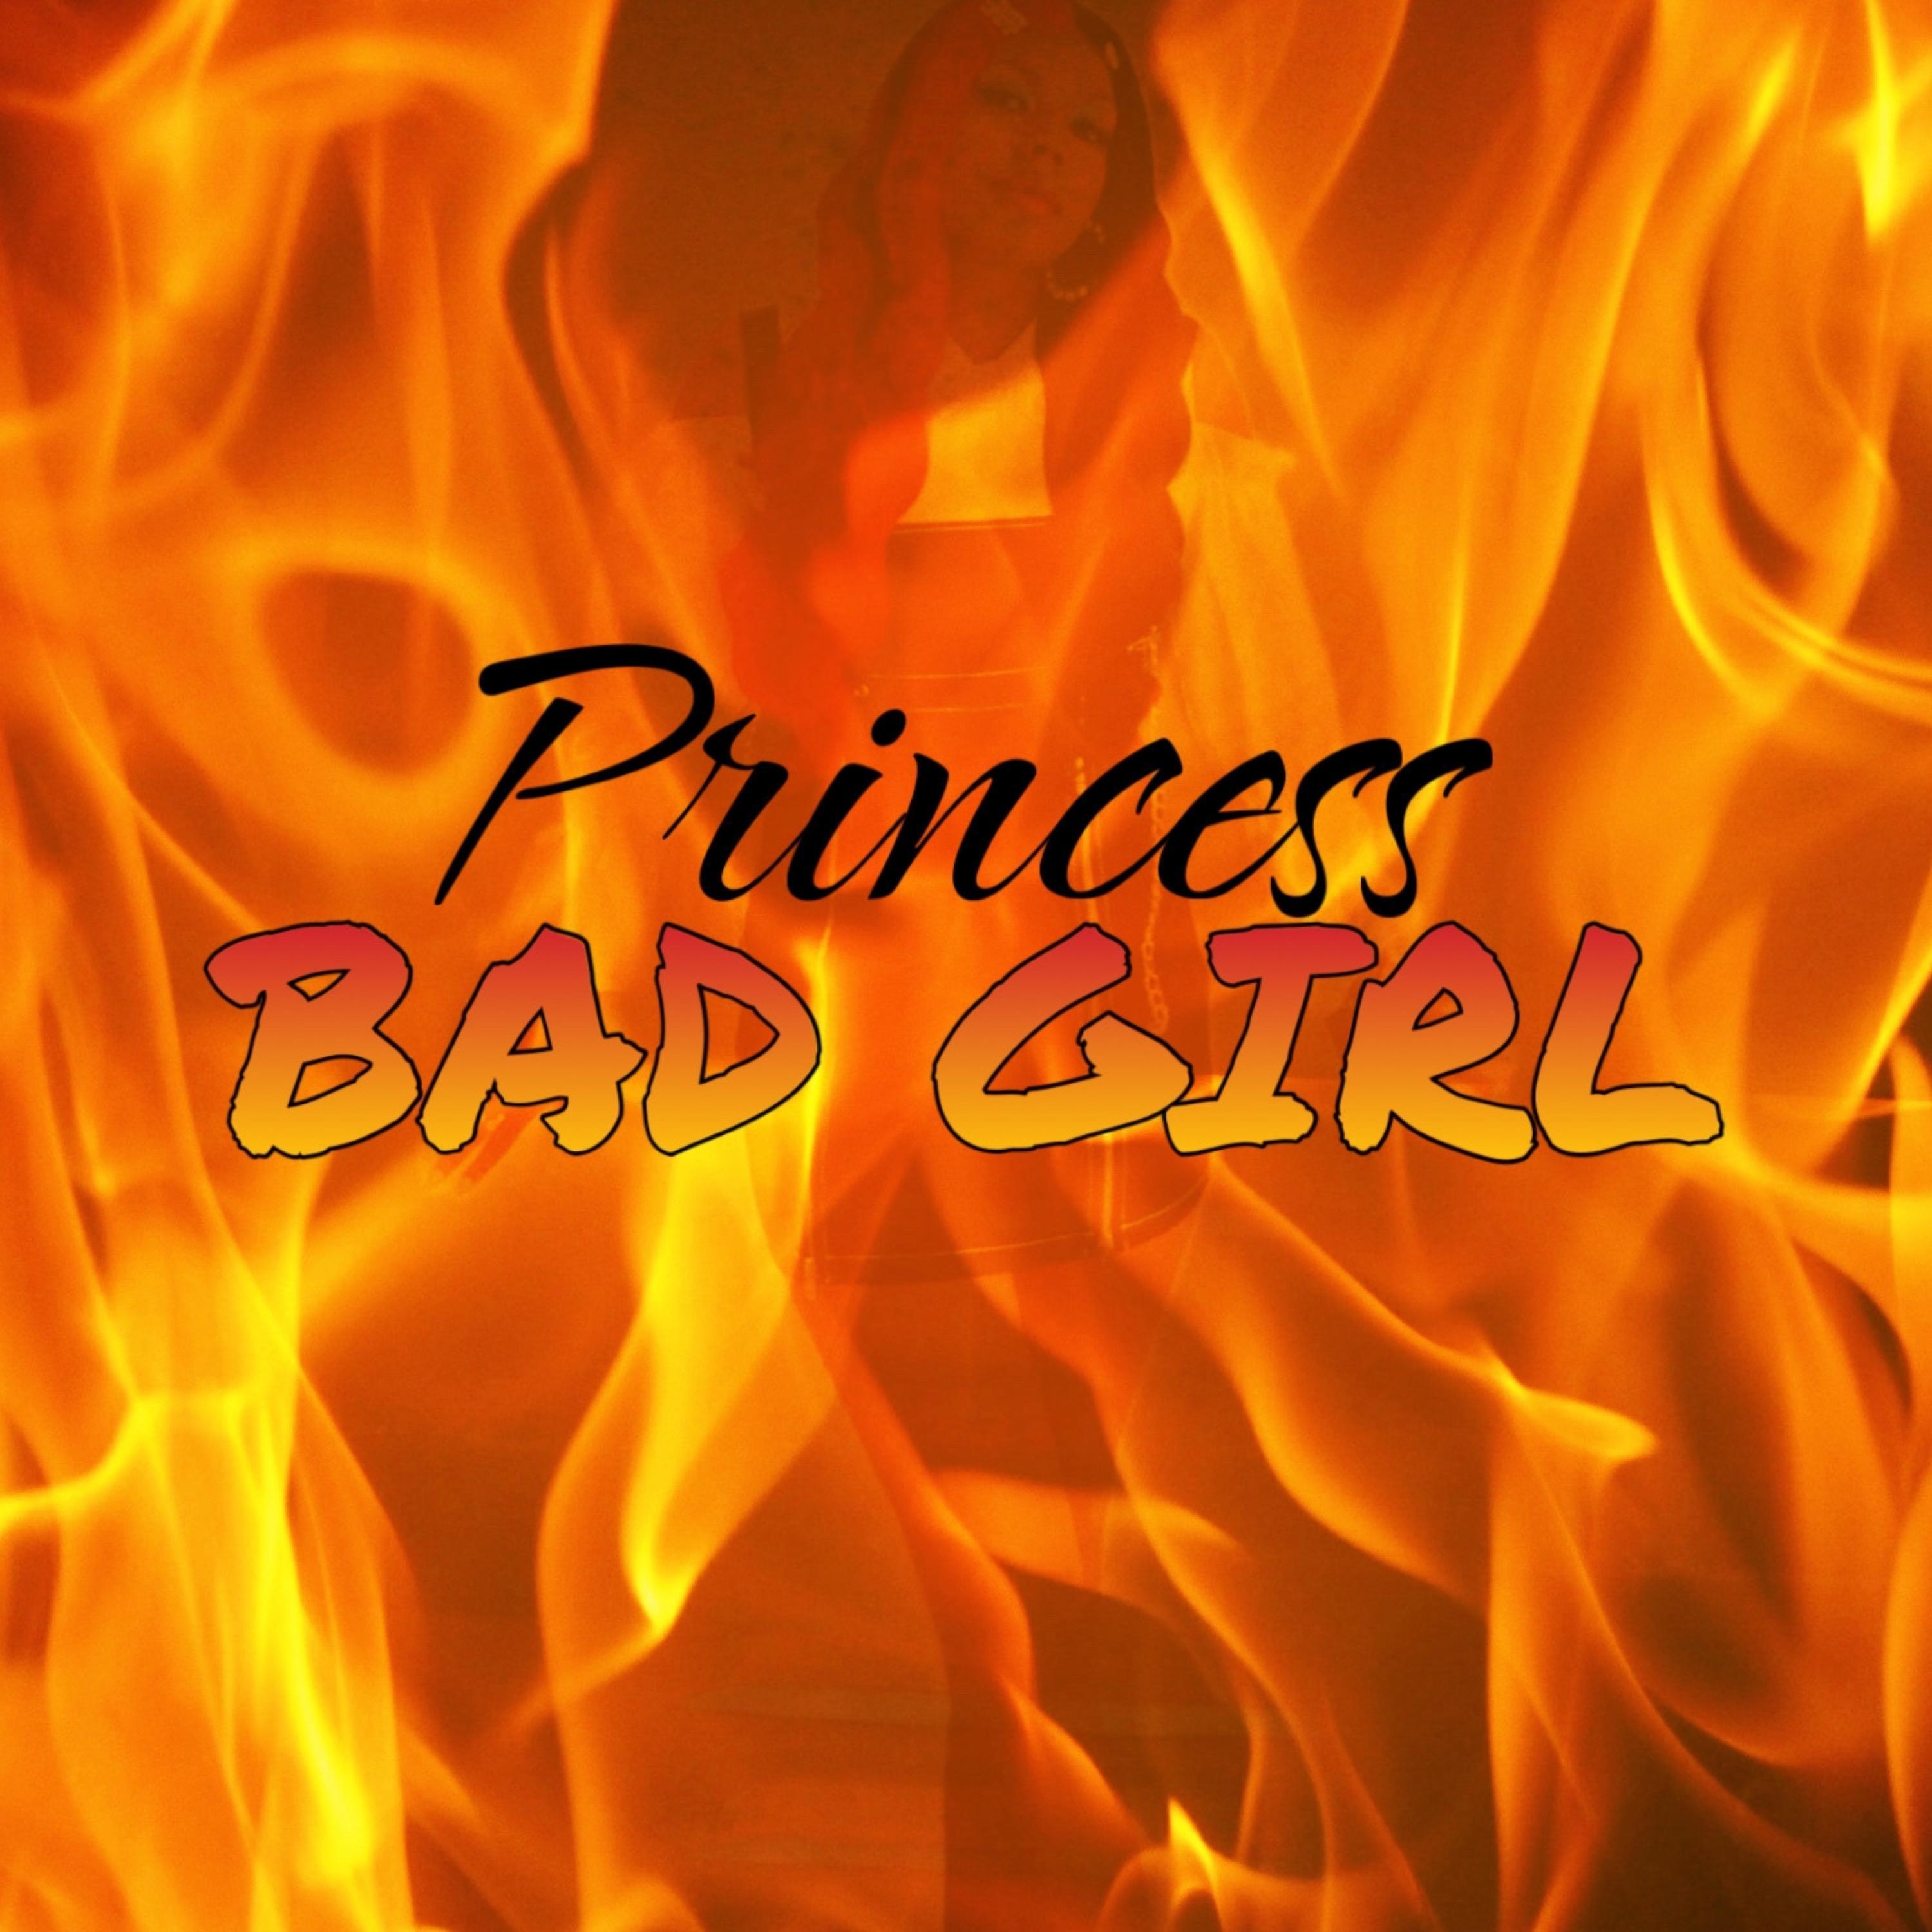 Princess - Bad Girl (Clean)